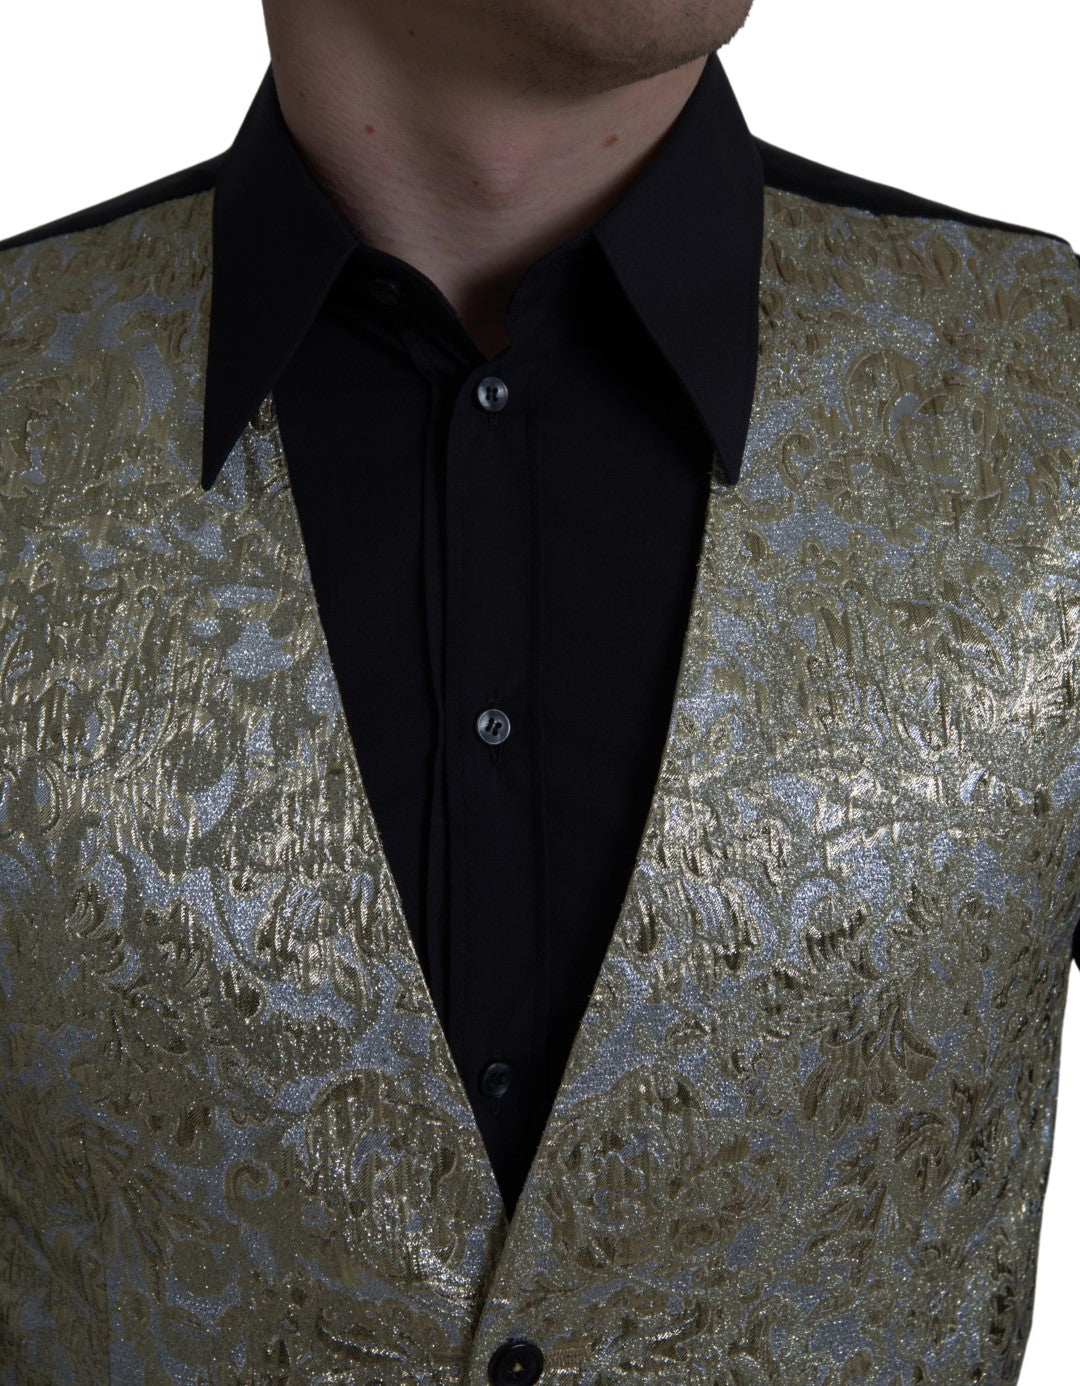 Floral Jacquard Waistcoat Formal Gold Vest